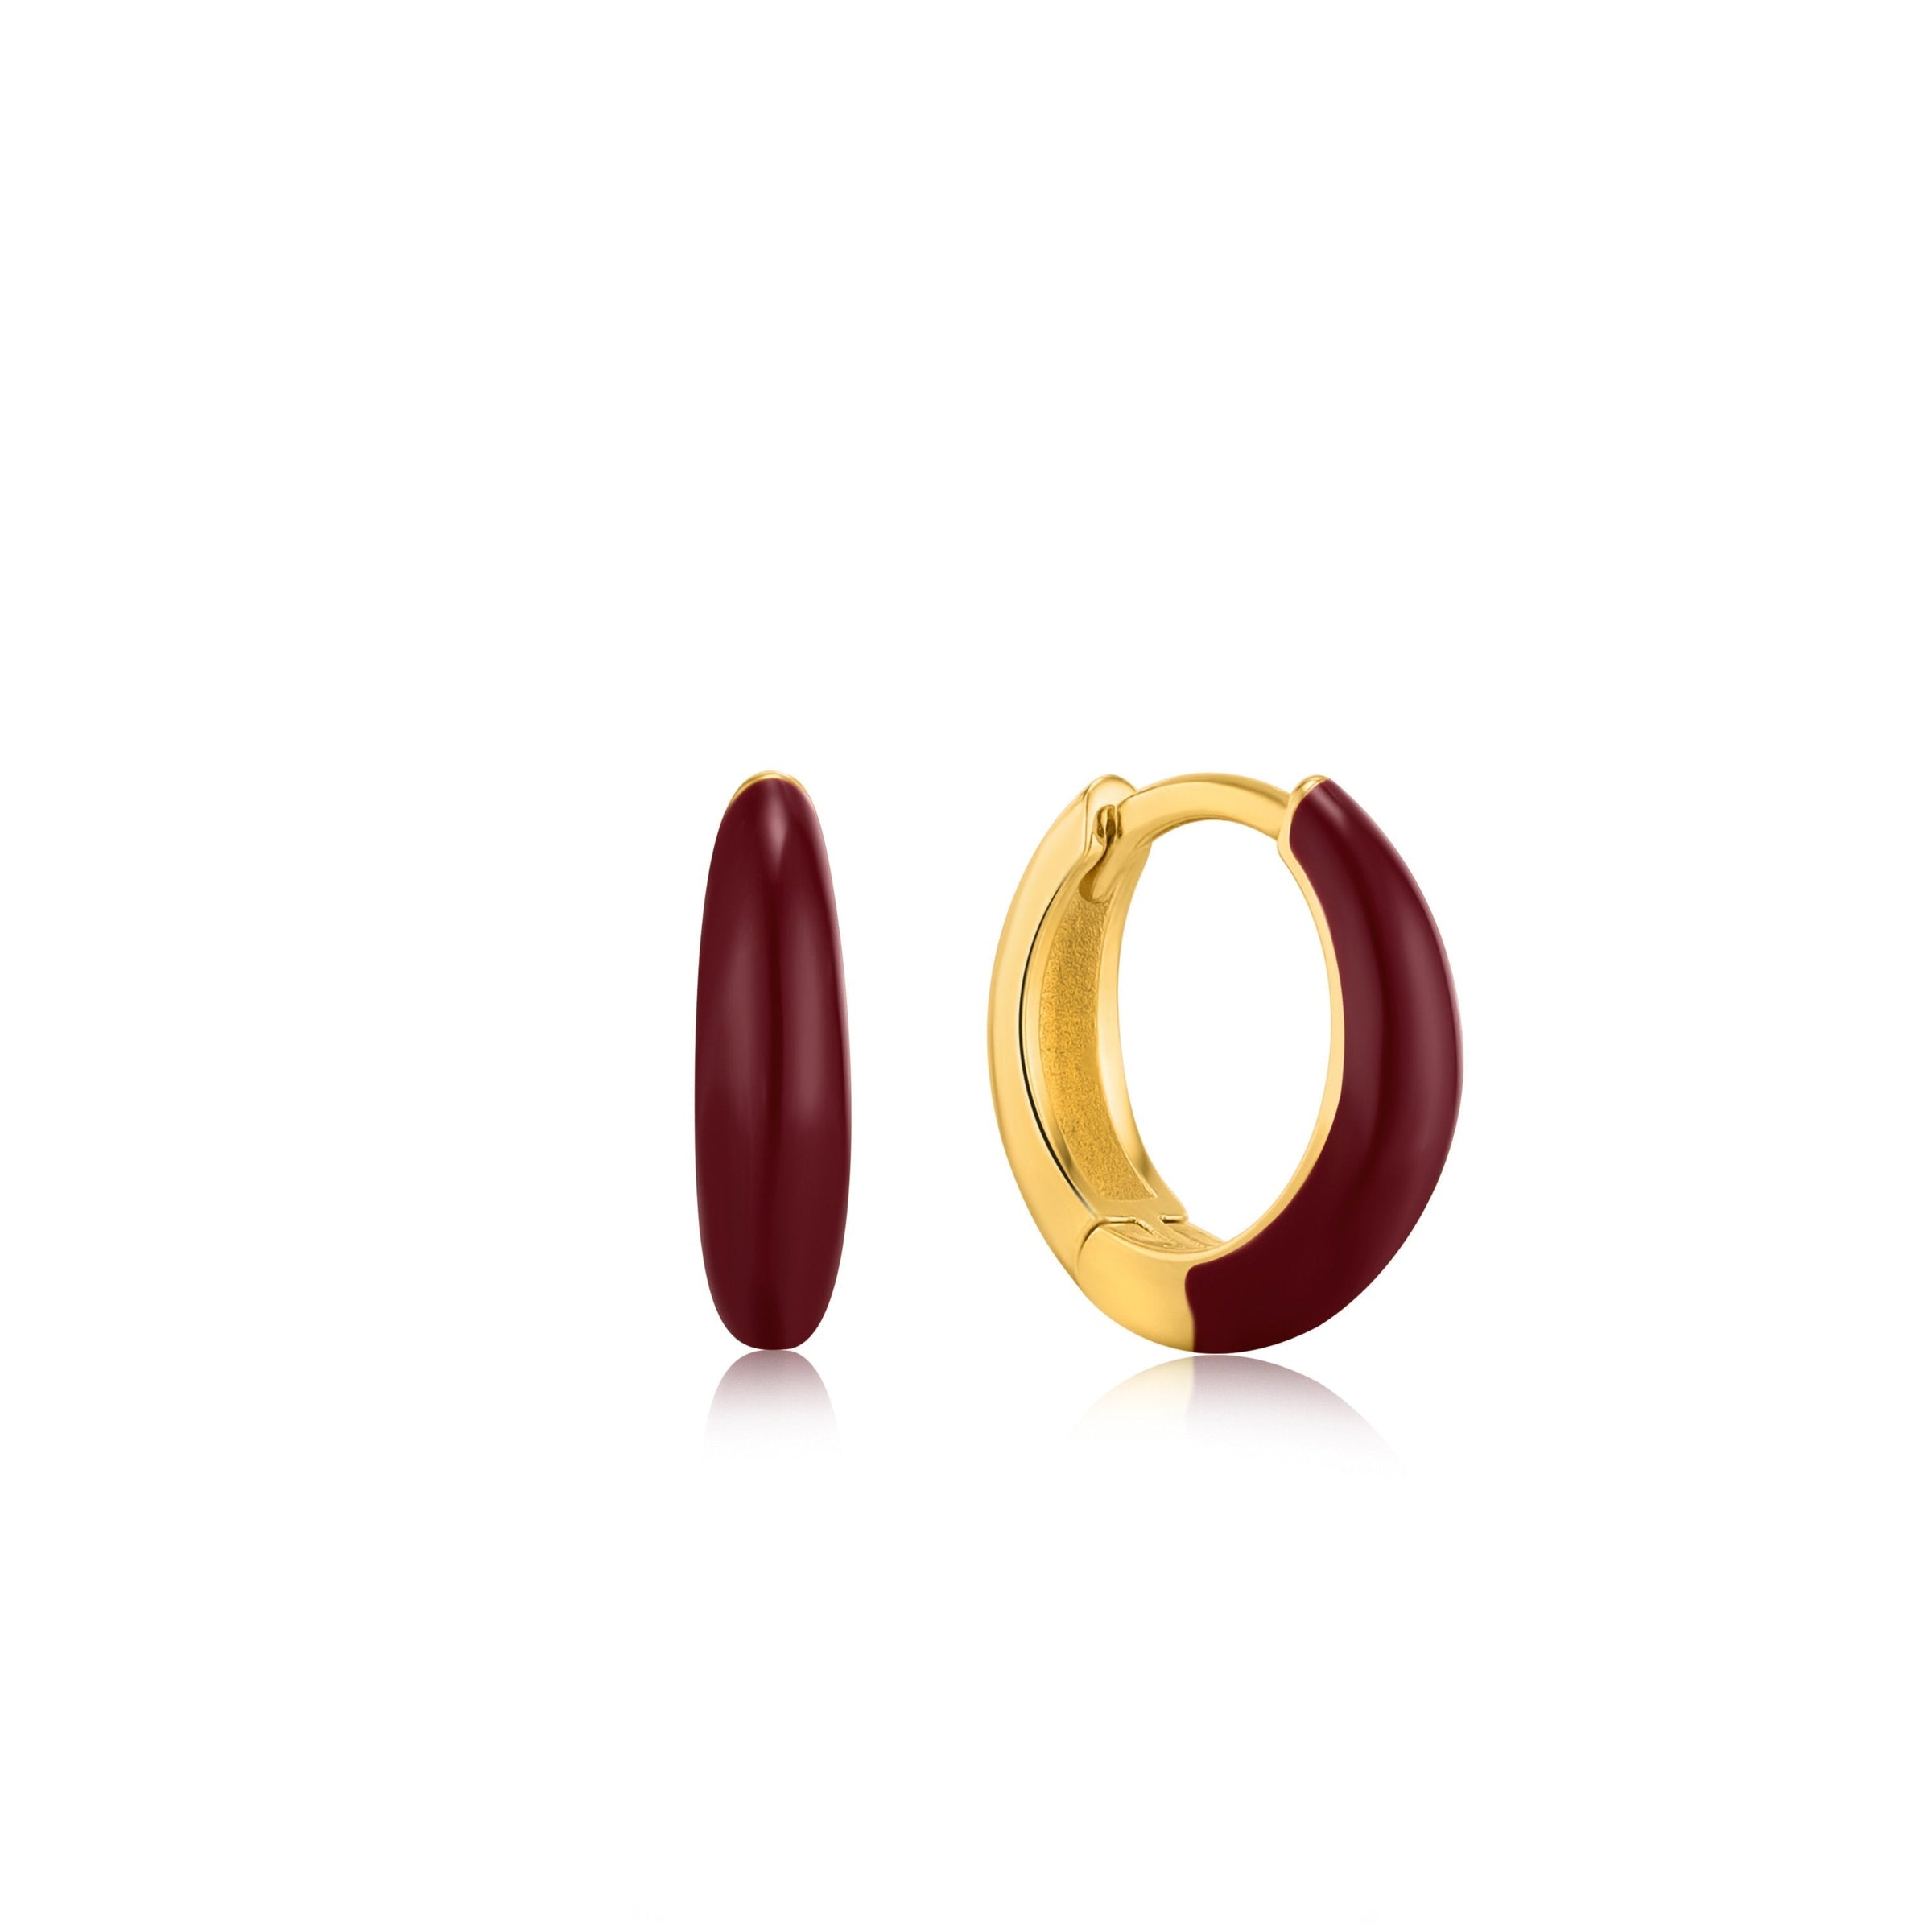 Ania Haie Claret Red Enamel Gold Sleek Huggie Hoop Earrings Earrings Ania Haie 